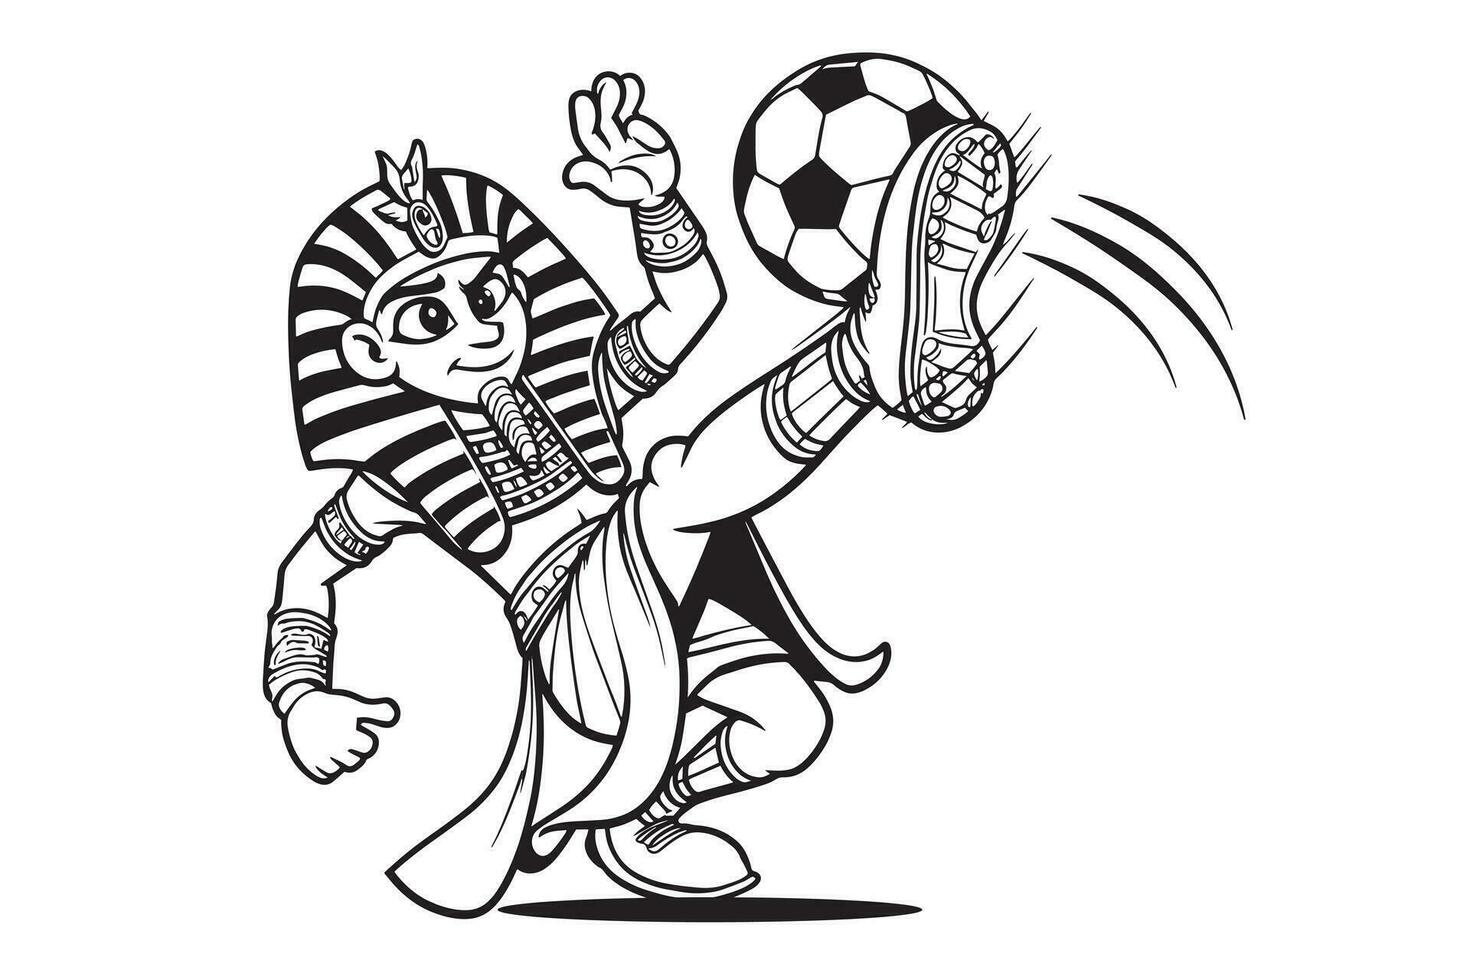 egipcio faraónico Rey mascota dibujos animados personaje jugando fútbol americano fútbol África contenido equipo vector Arte cómic dibujo2